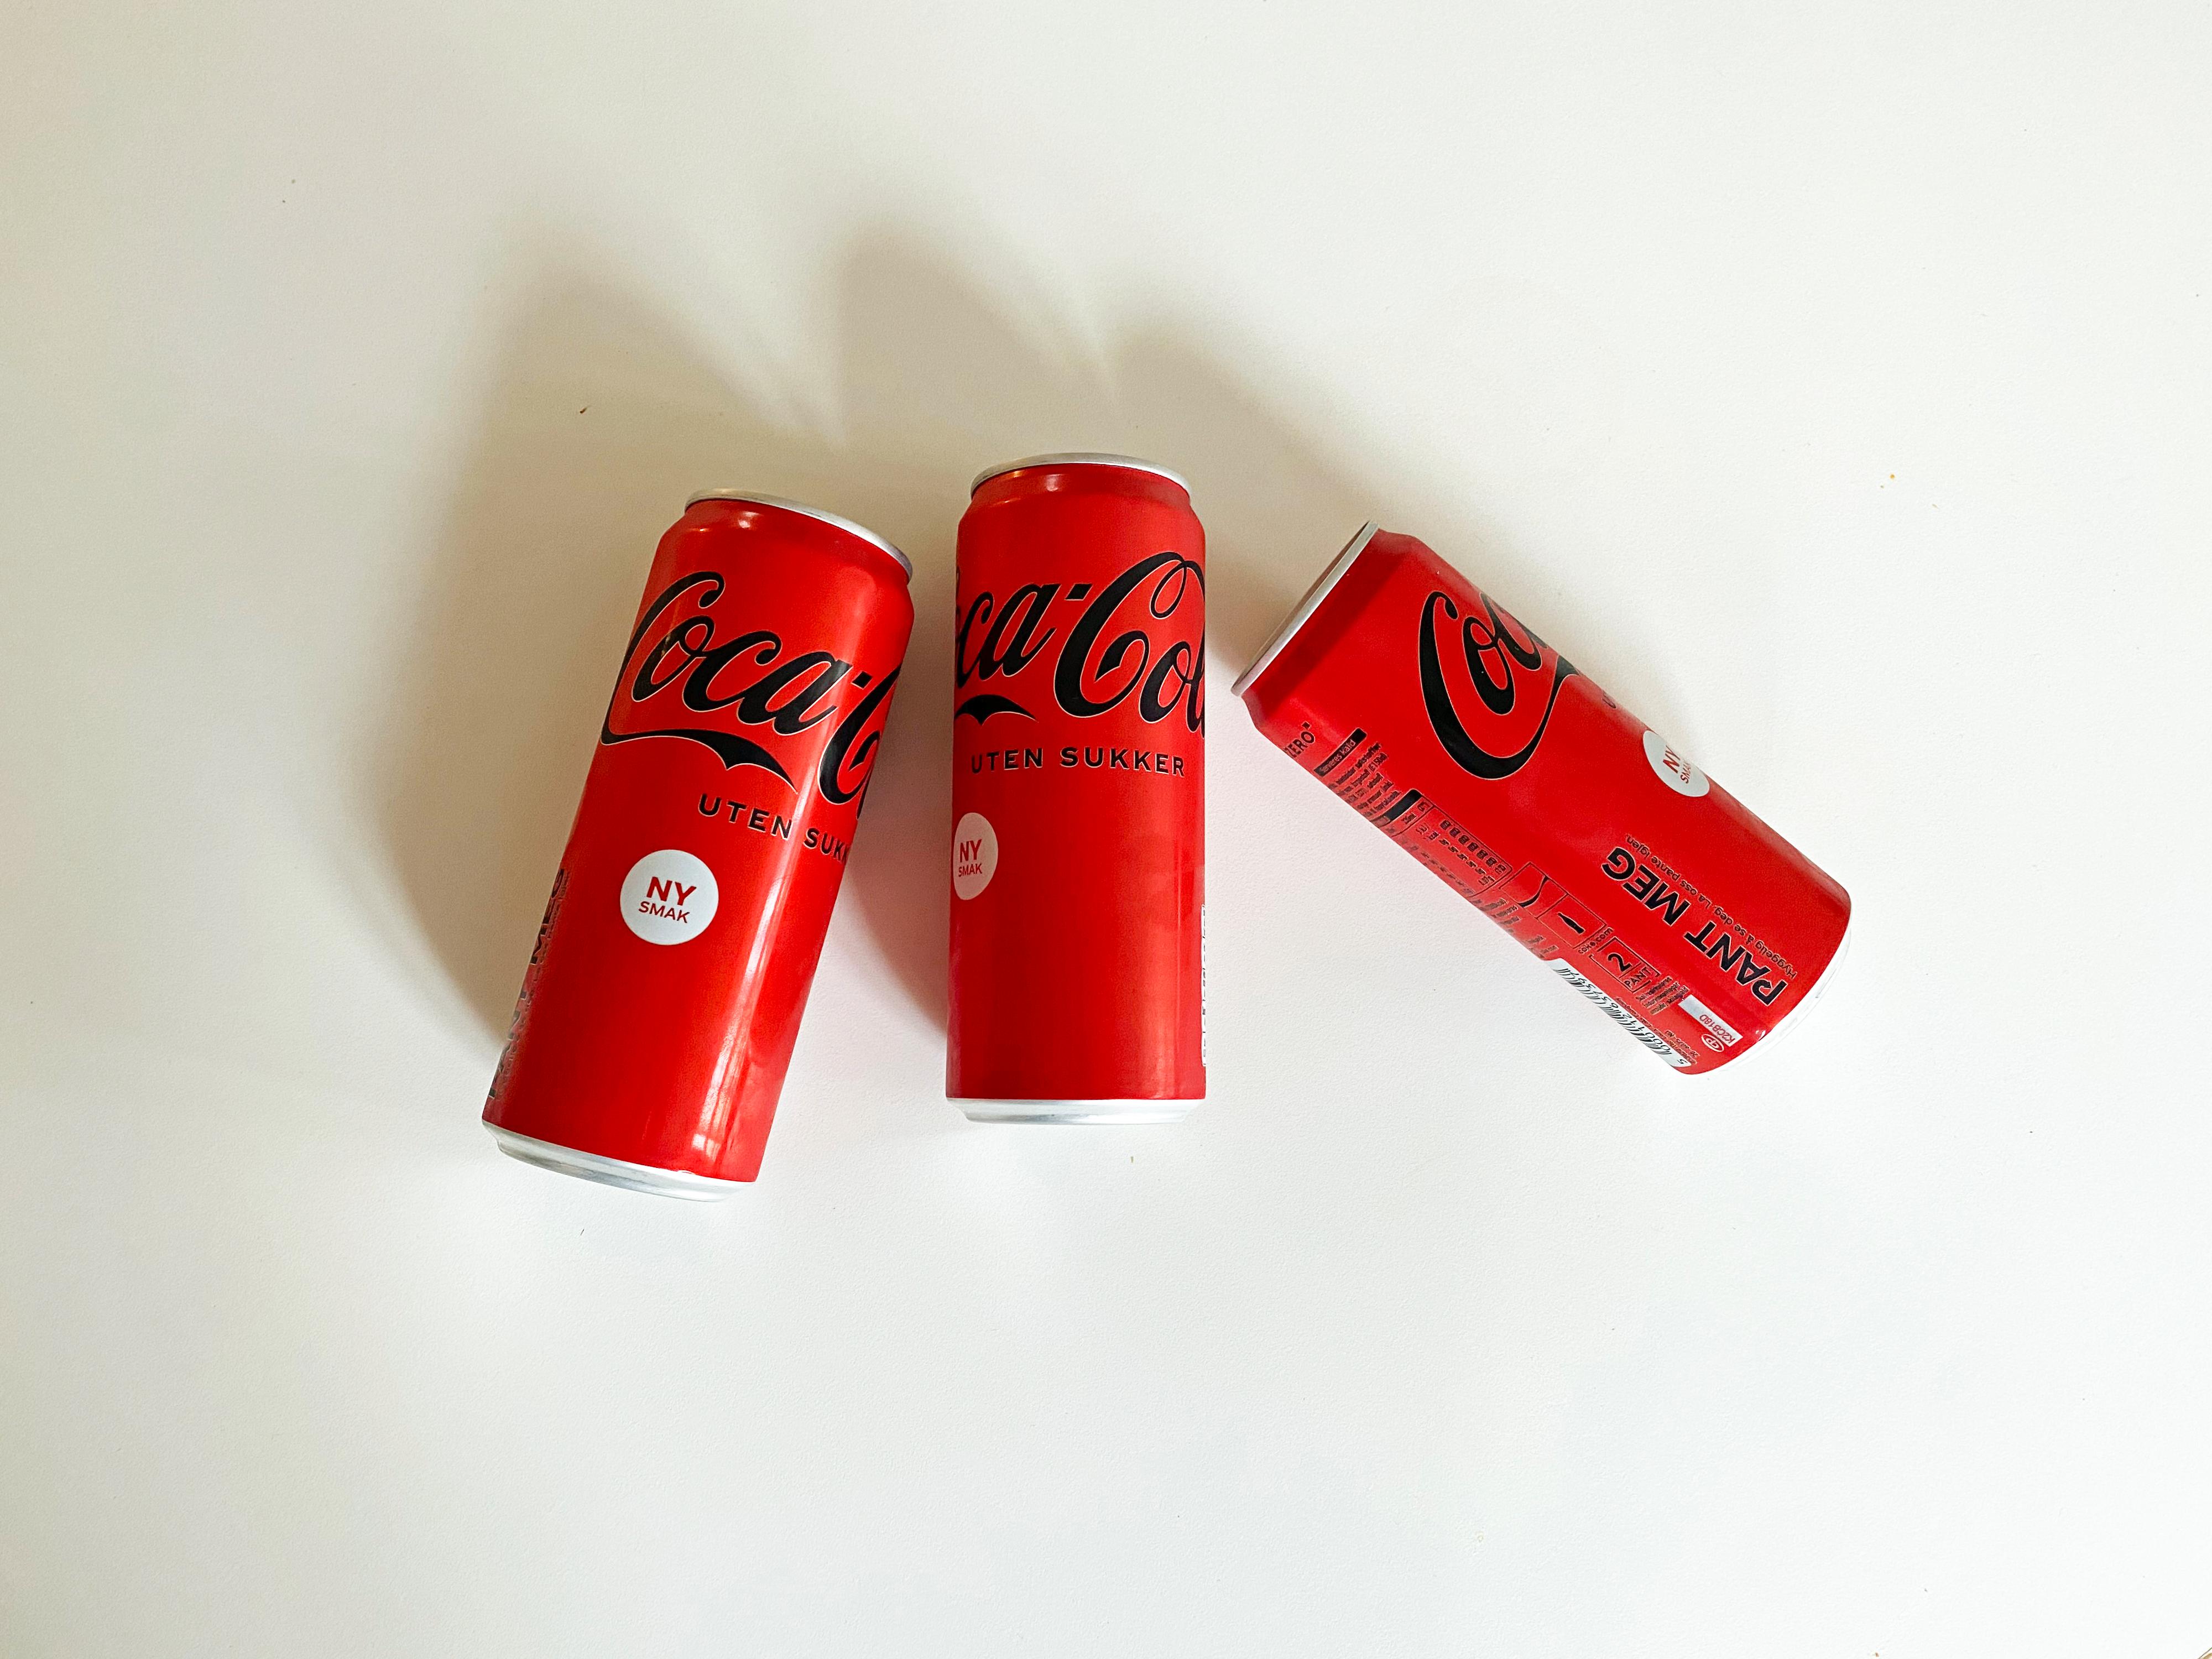 IKKE SOM FØR: De nye Coca-Cola uten sukker-boksene kan minne om de klassiske «sukkercola»-boksene. For ordens skyld, boksene på bildet er sendt til oss av Coca-Cola fordi de ennå ikke er tilgjengelige i butikk.